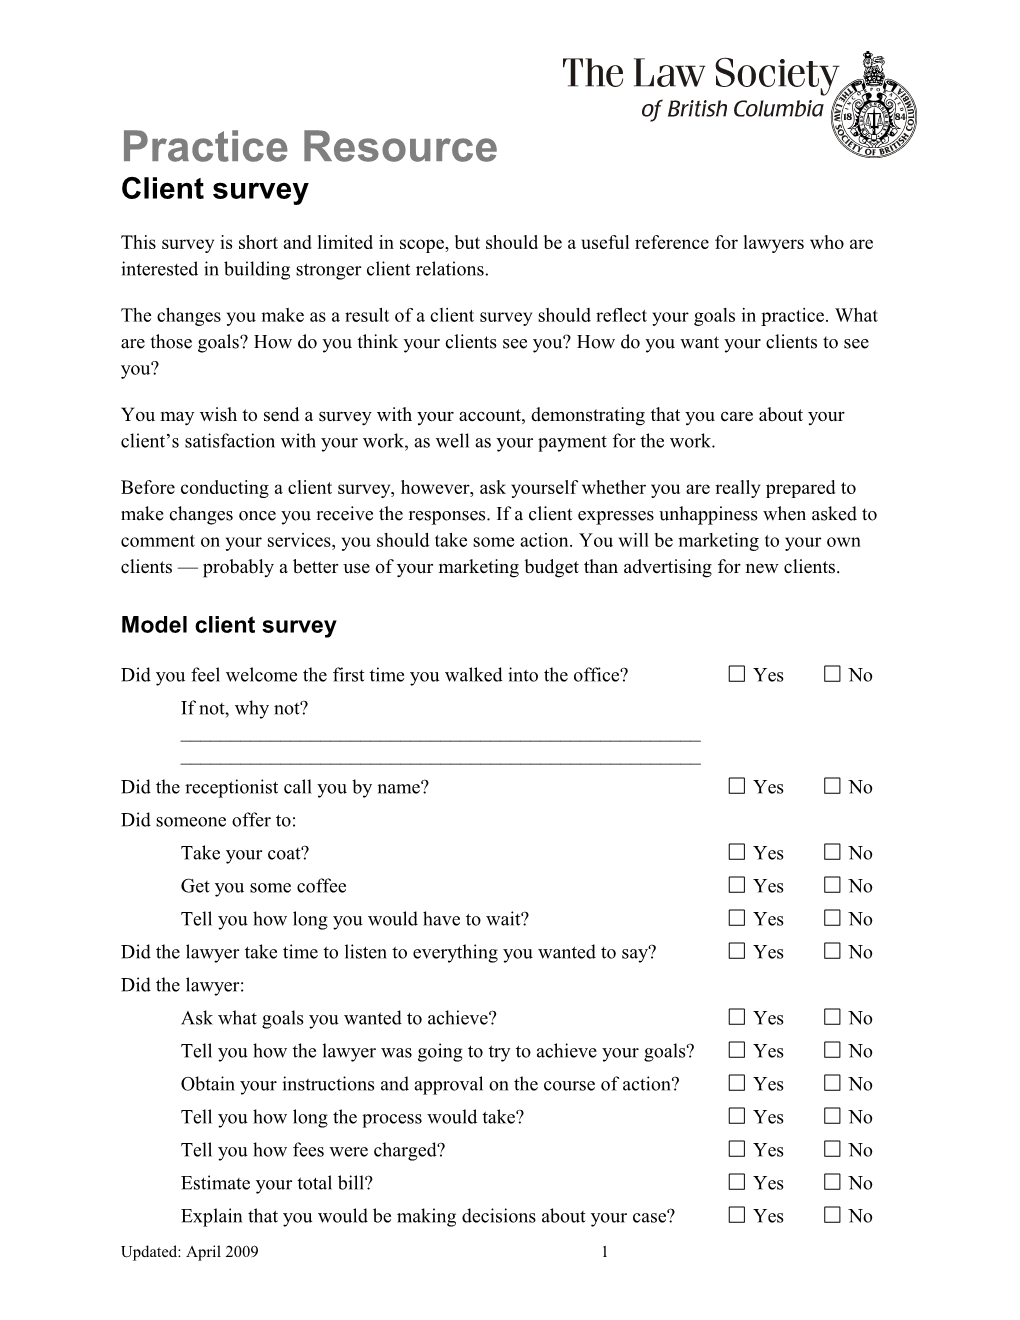 Practice Resource: Client Survey